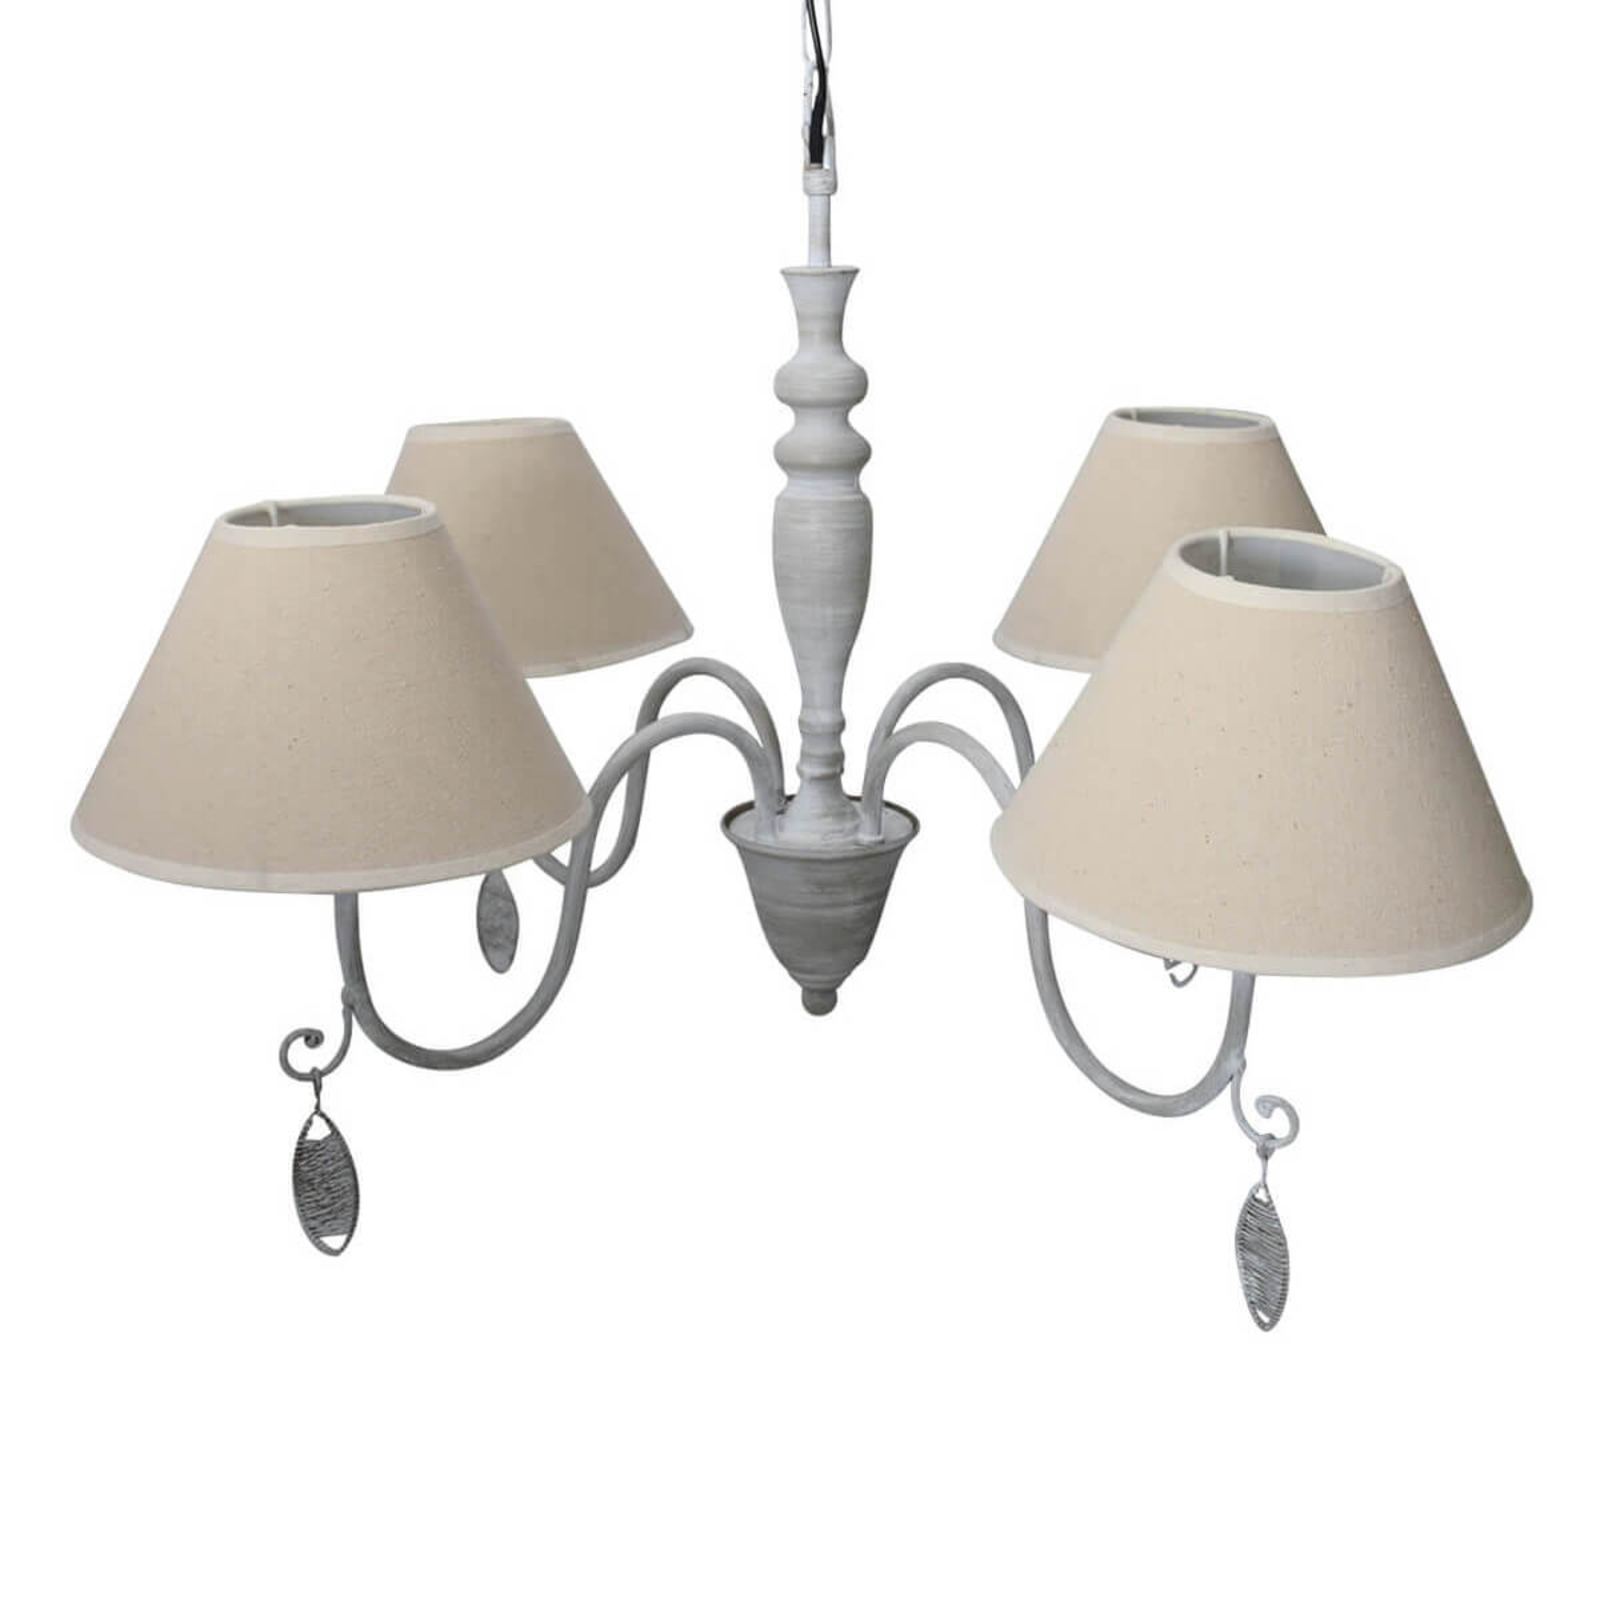 4-lamps hanglamp Merle met textielkappen